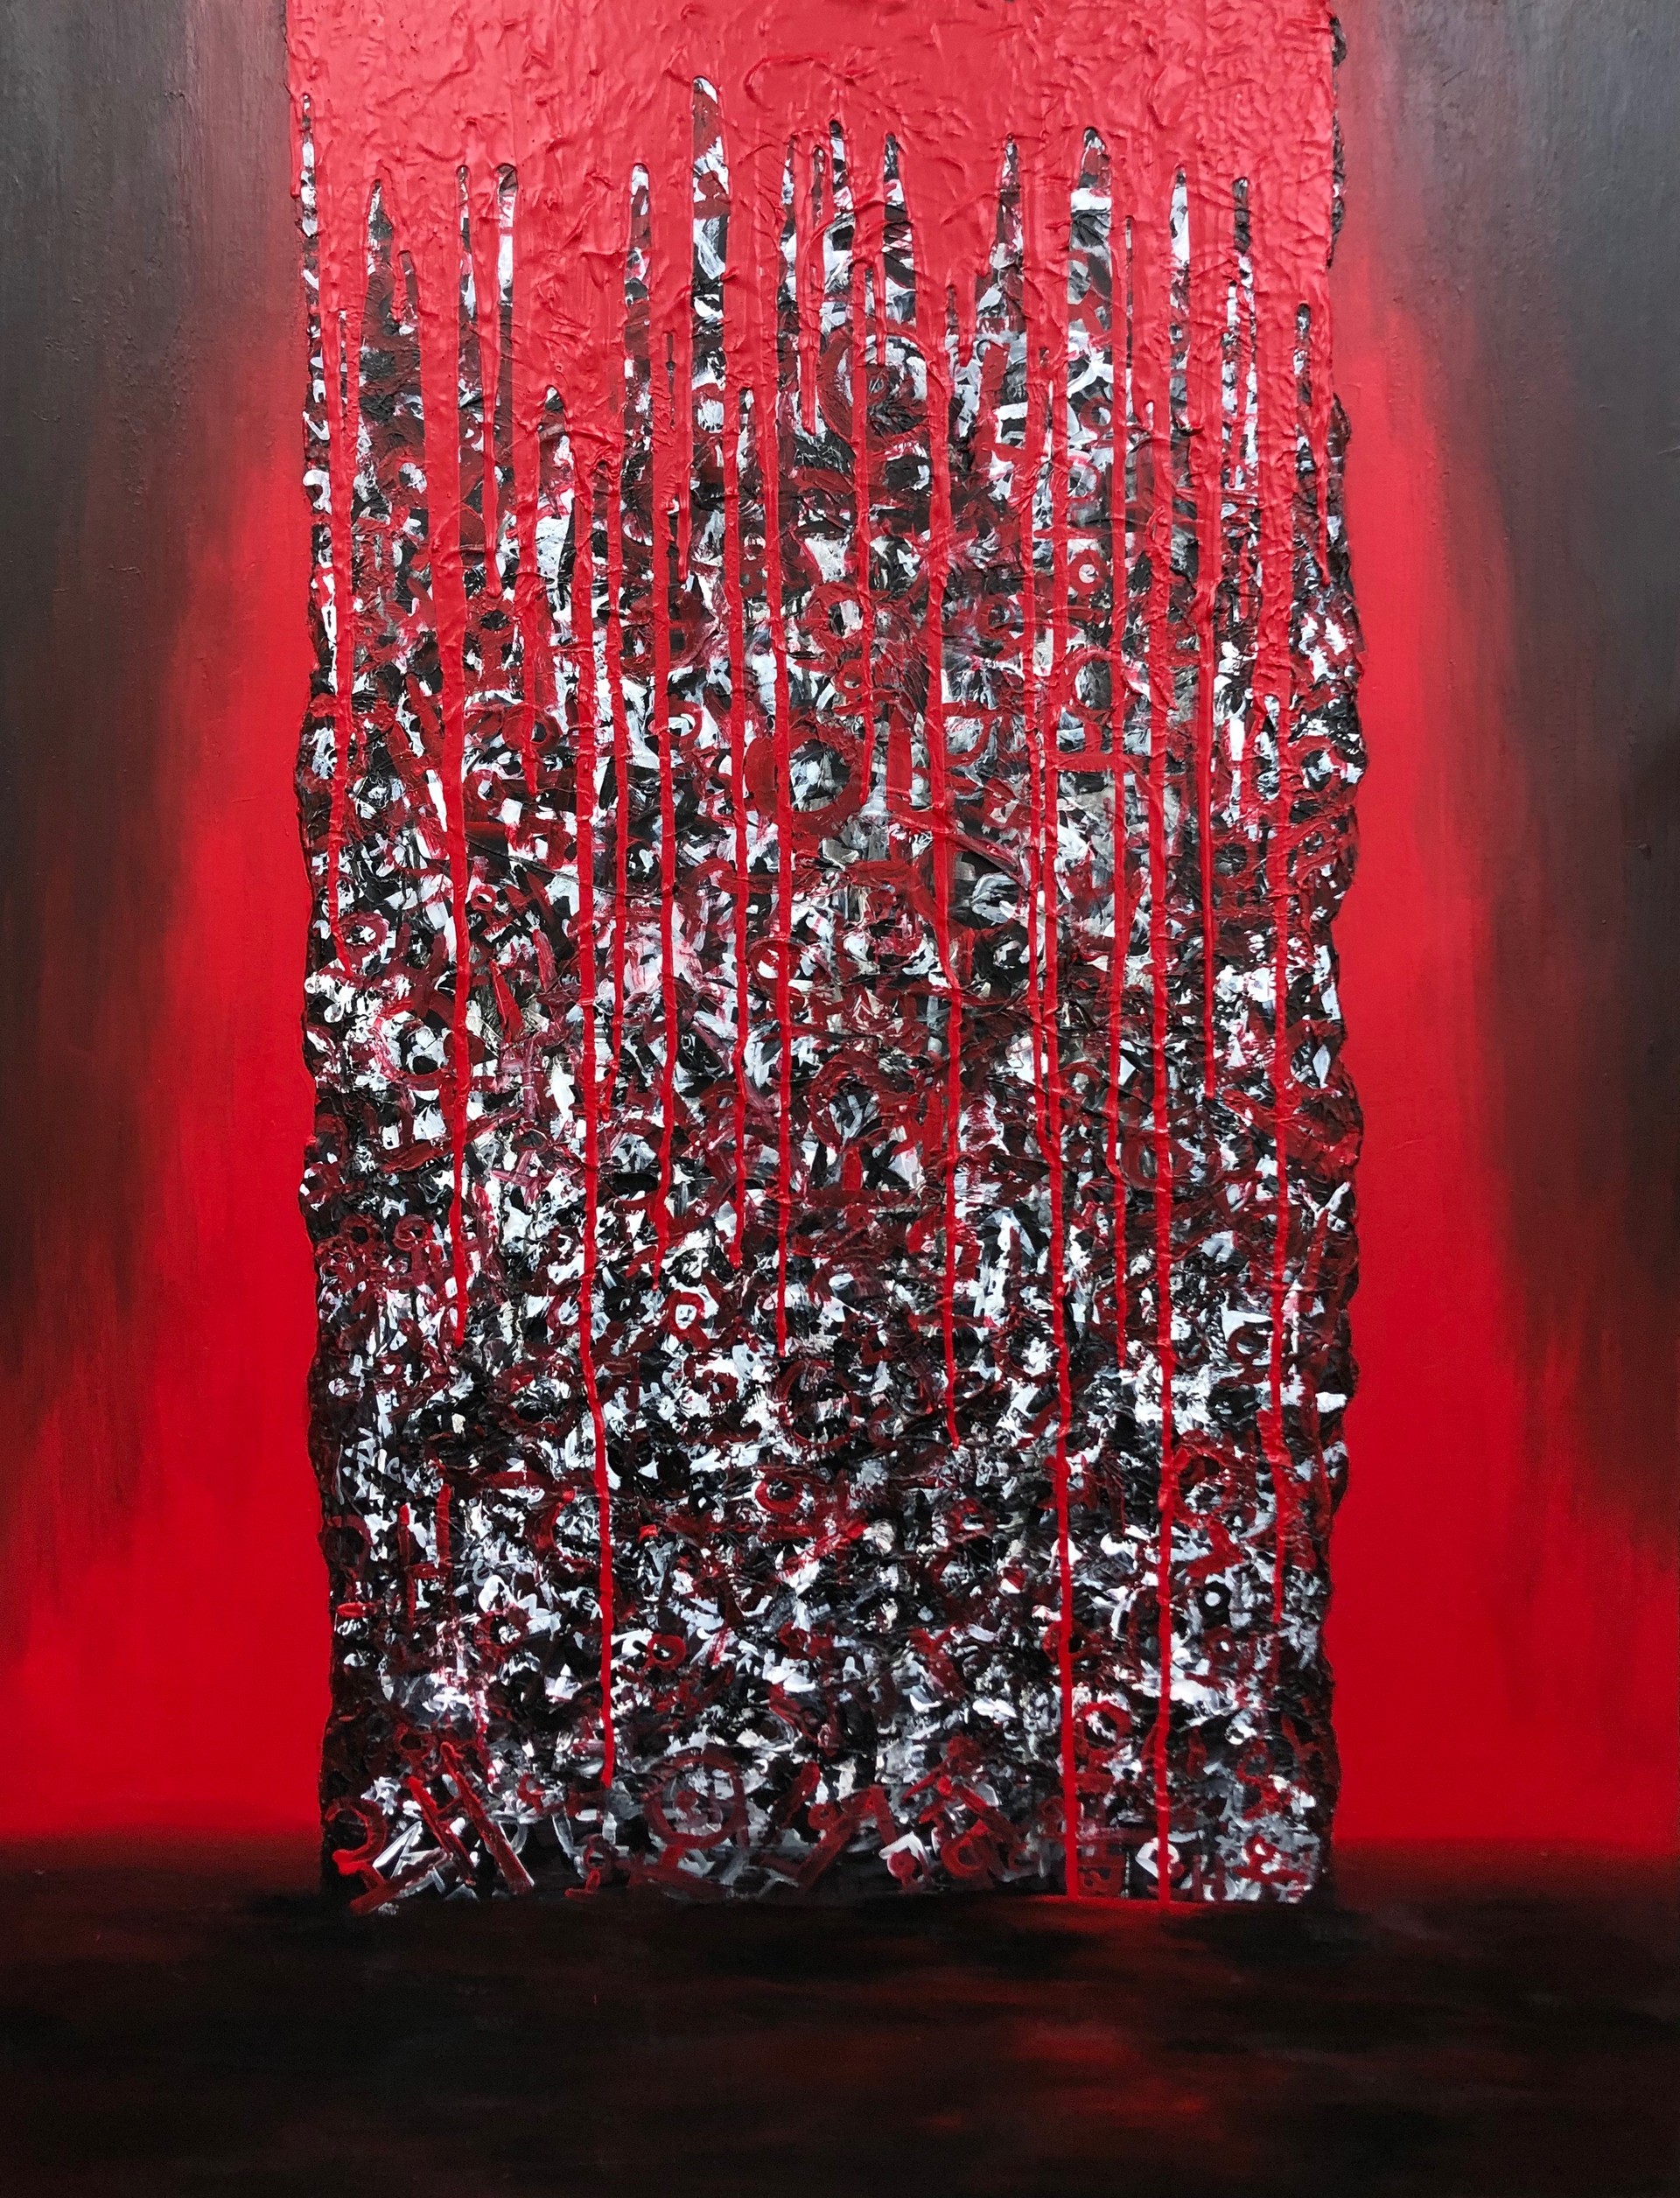 소리없는 아우성, 145.5 x 112.1, Acrylic on canvas, 2019